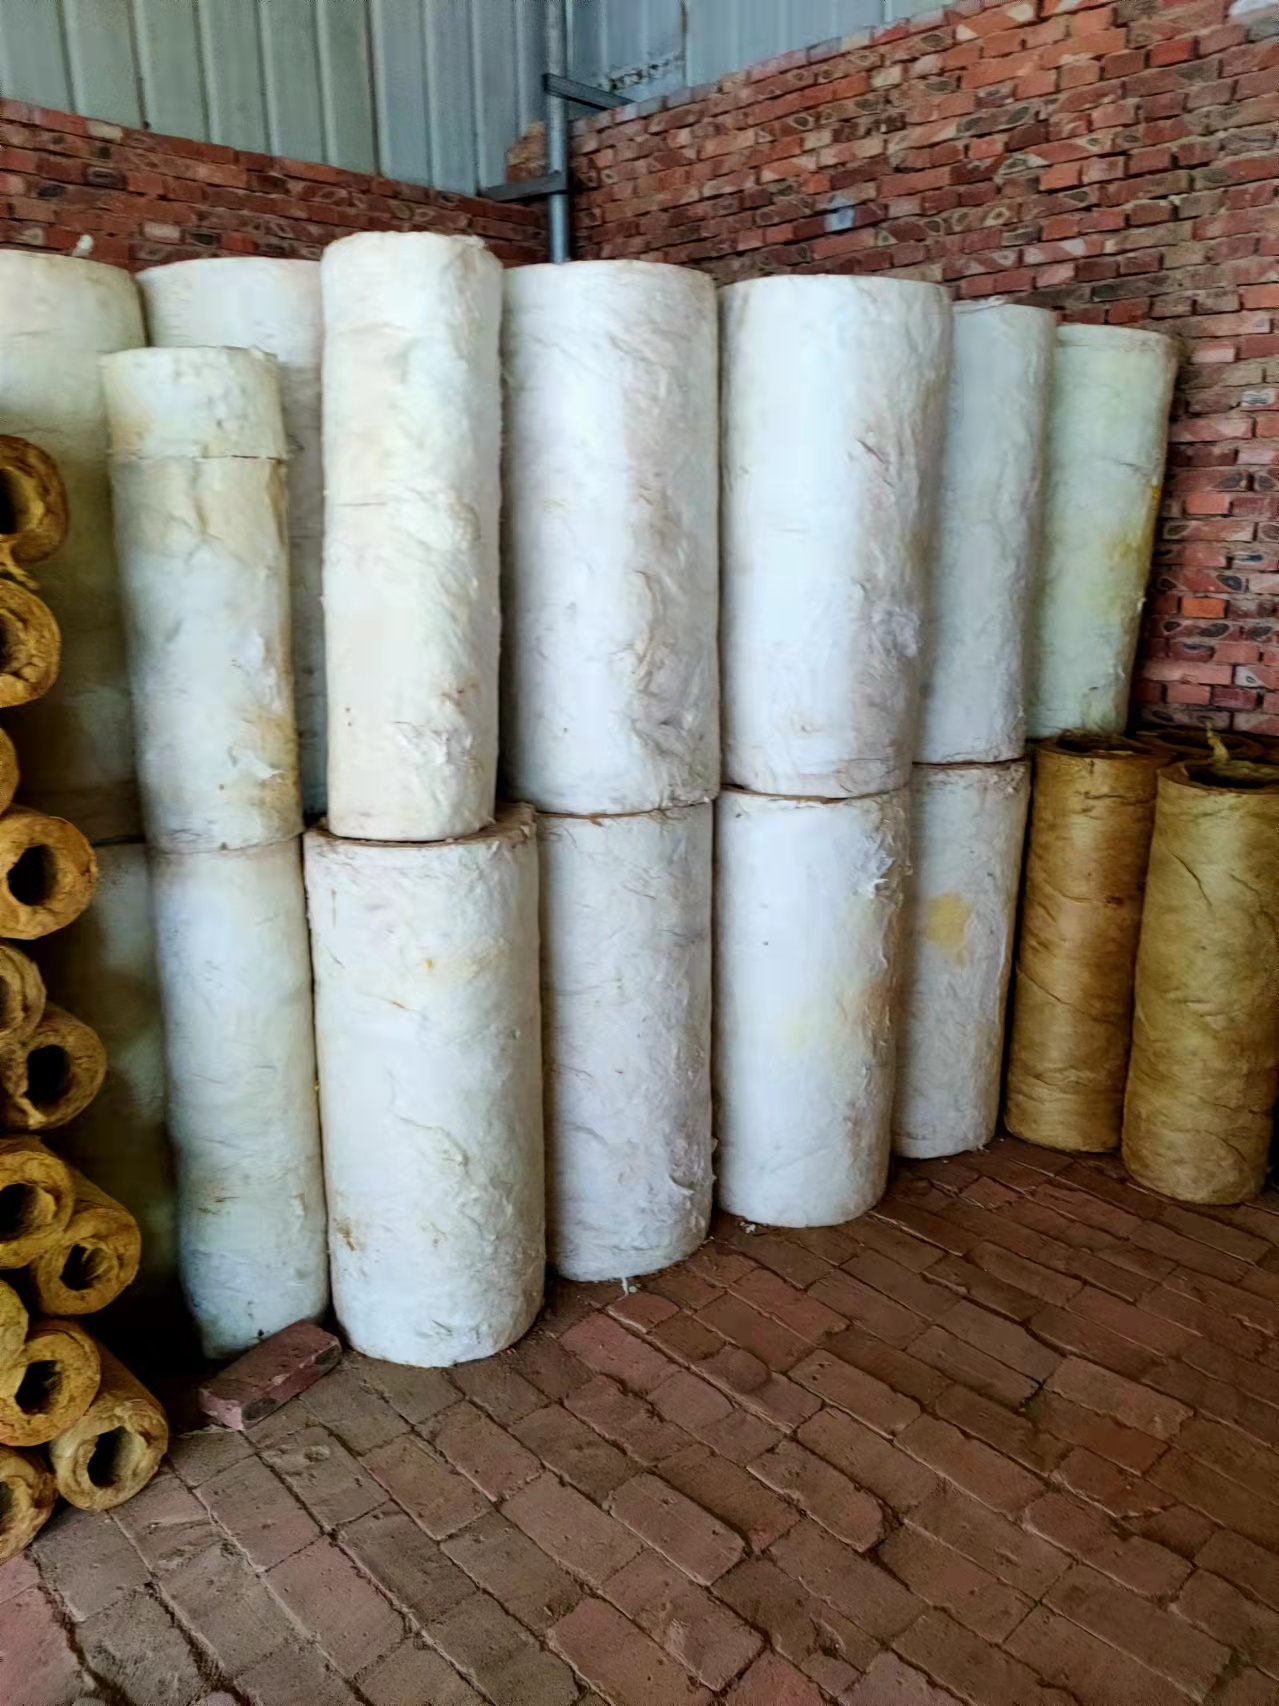 郴州硅酸铝陶瓷纤维毡厂家供应价格